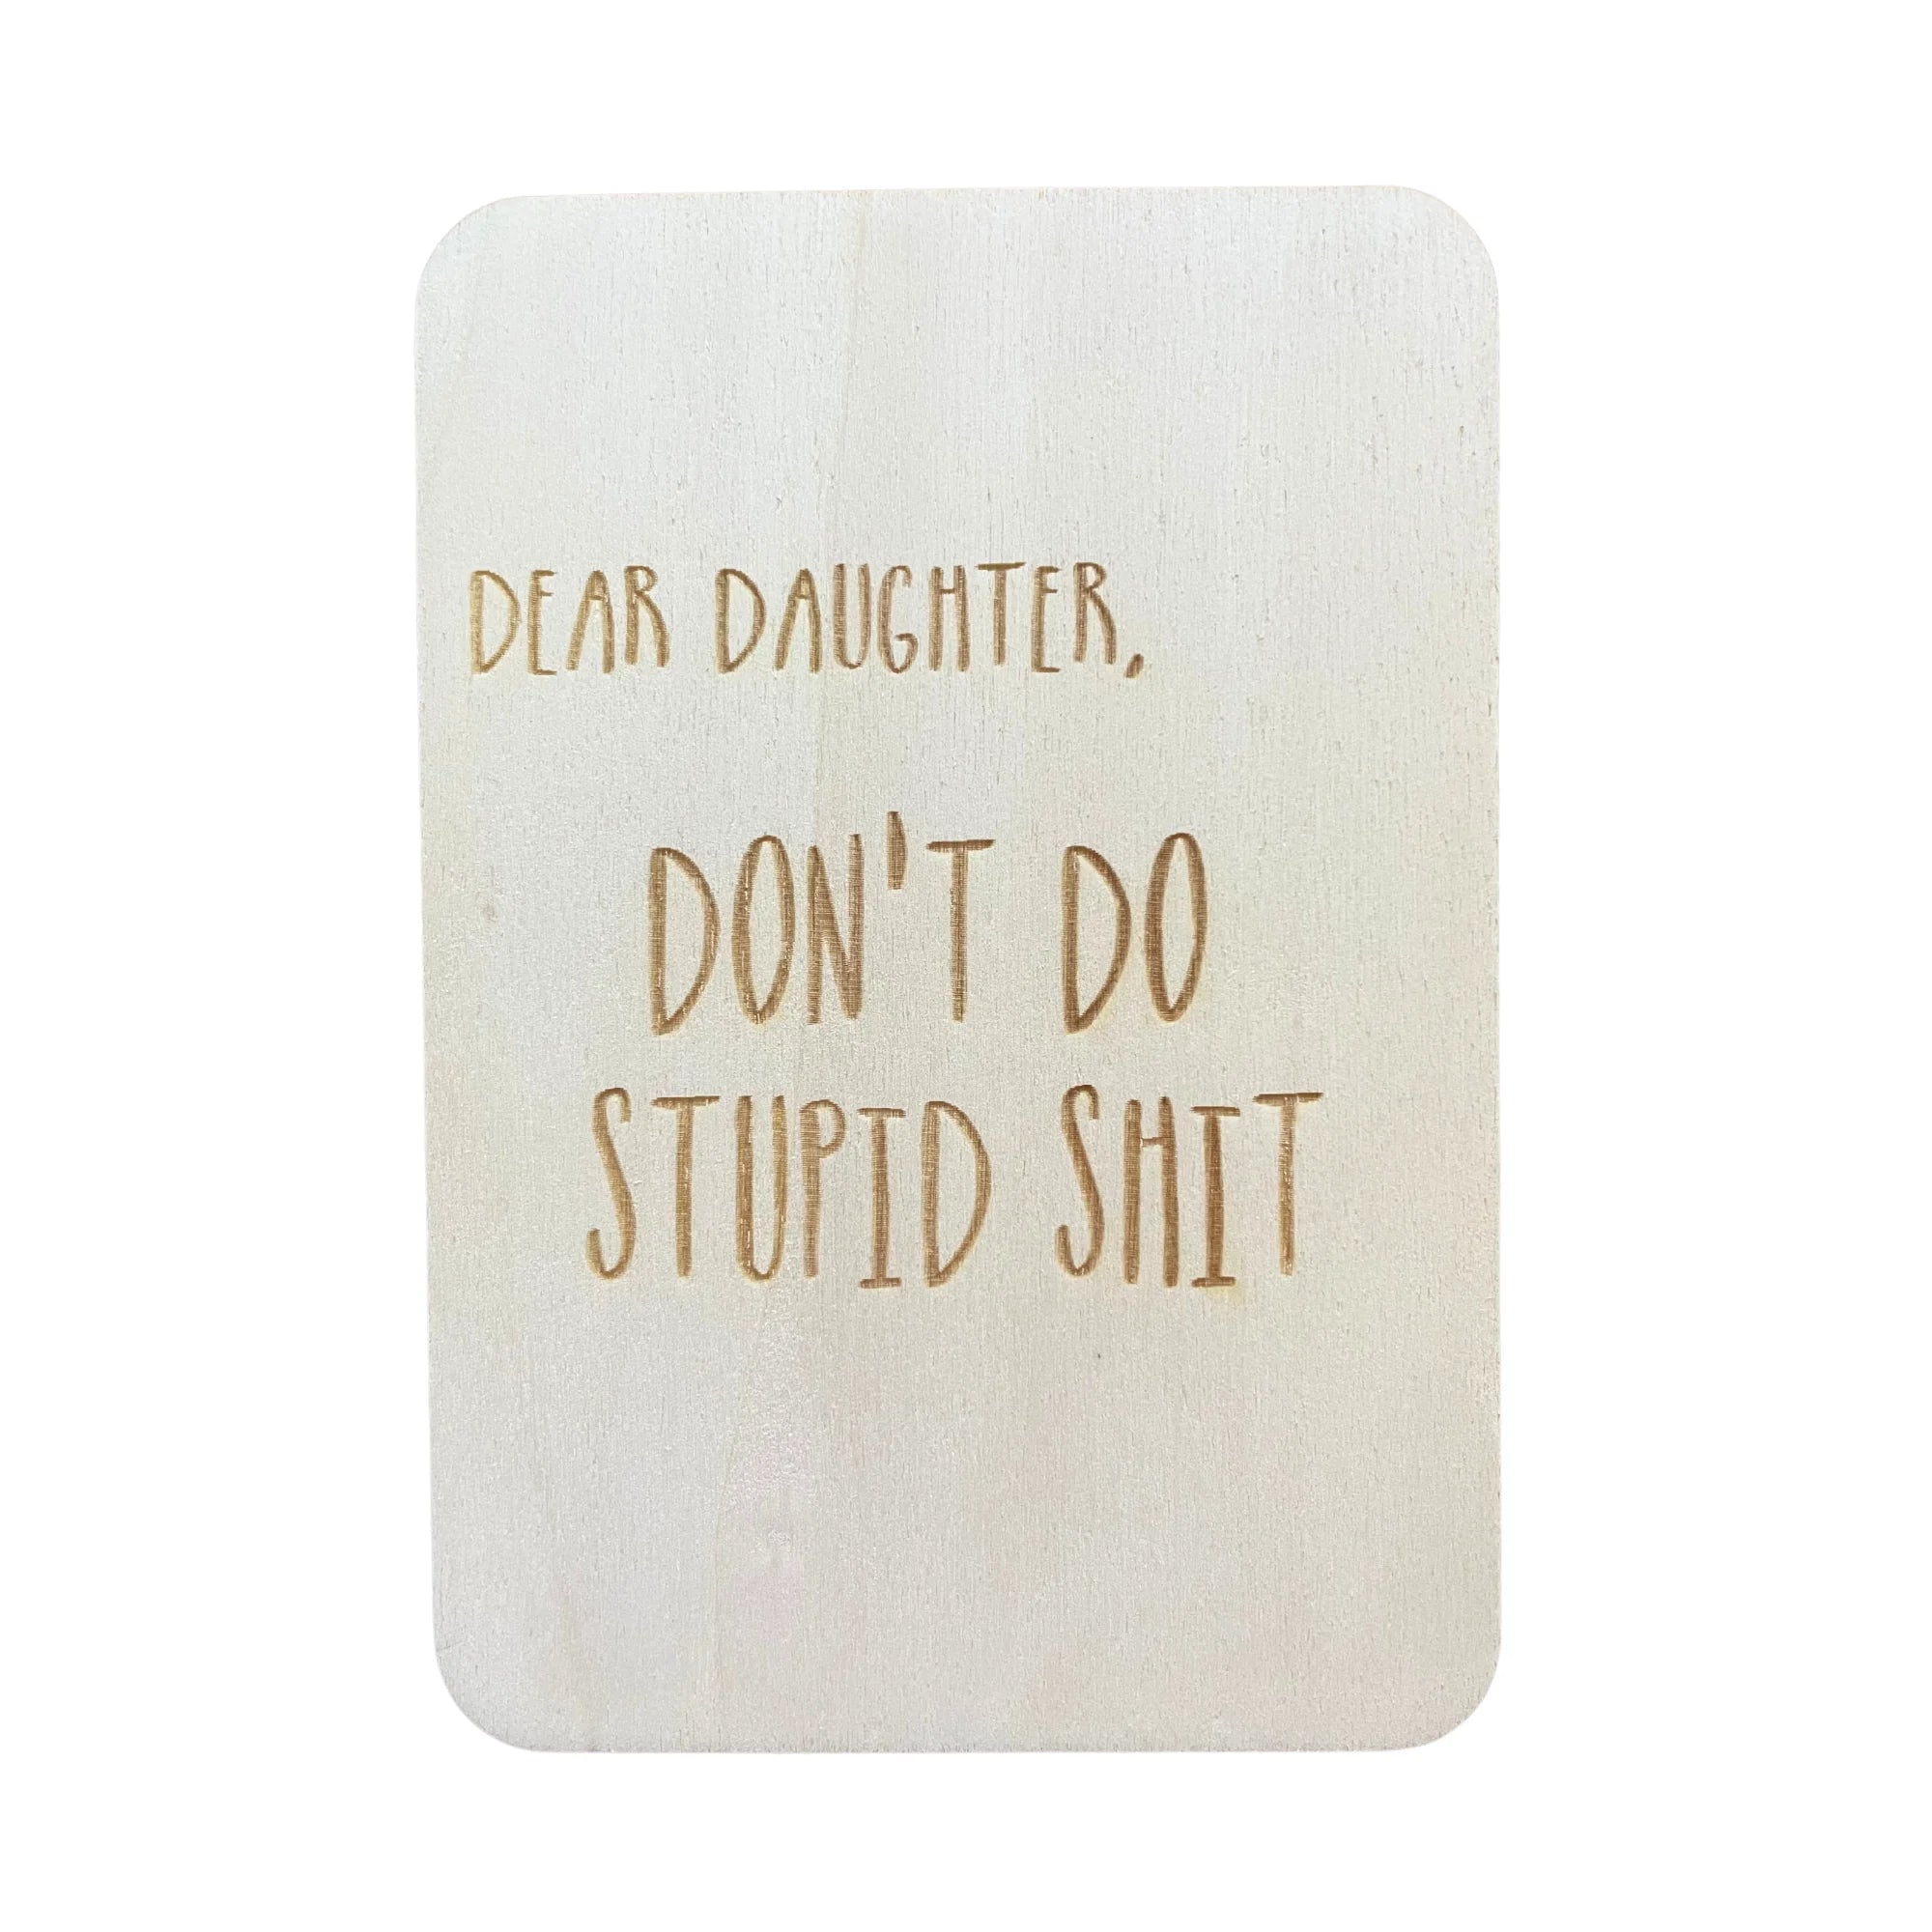 Dear Daughter don't do stupid shit